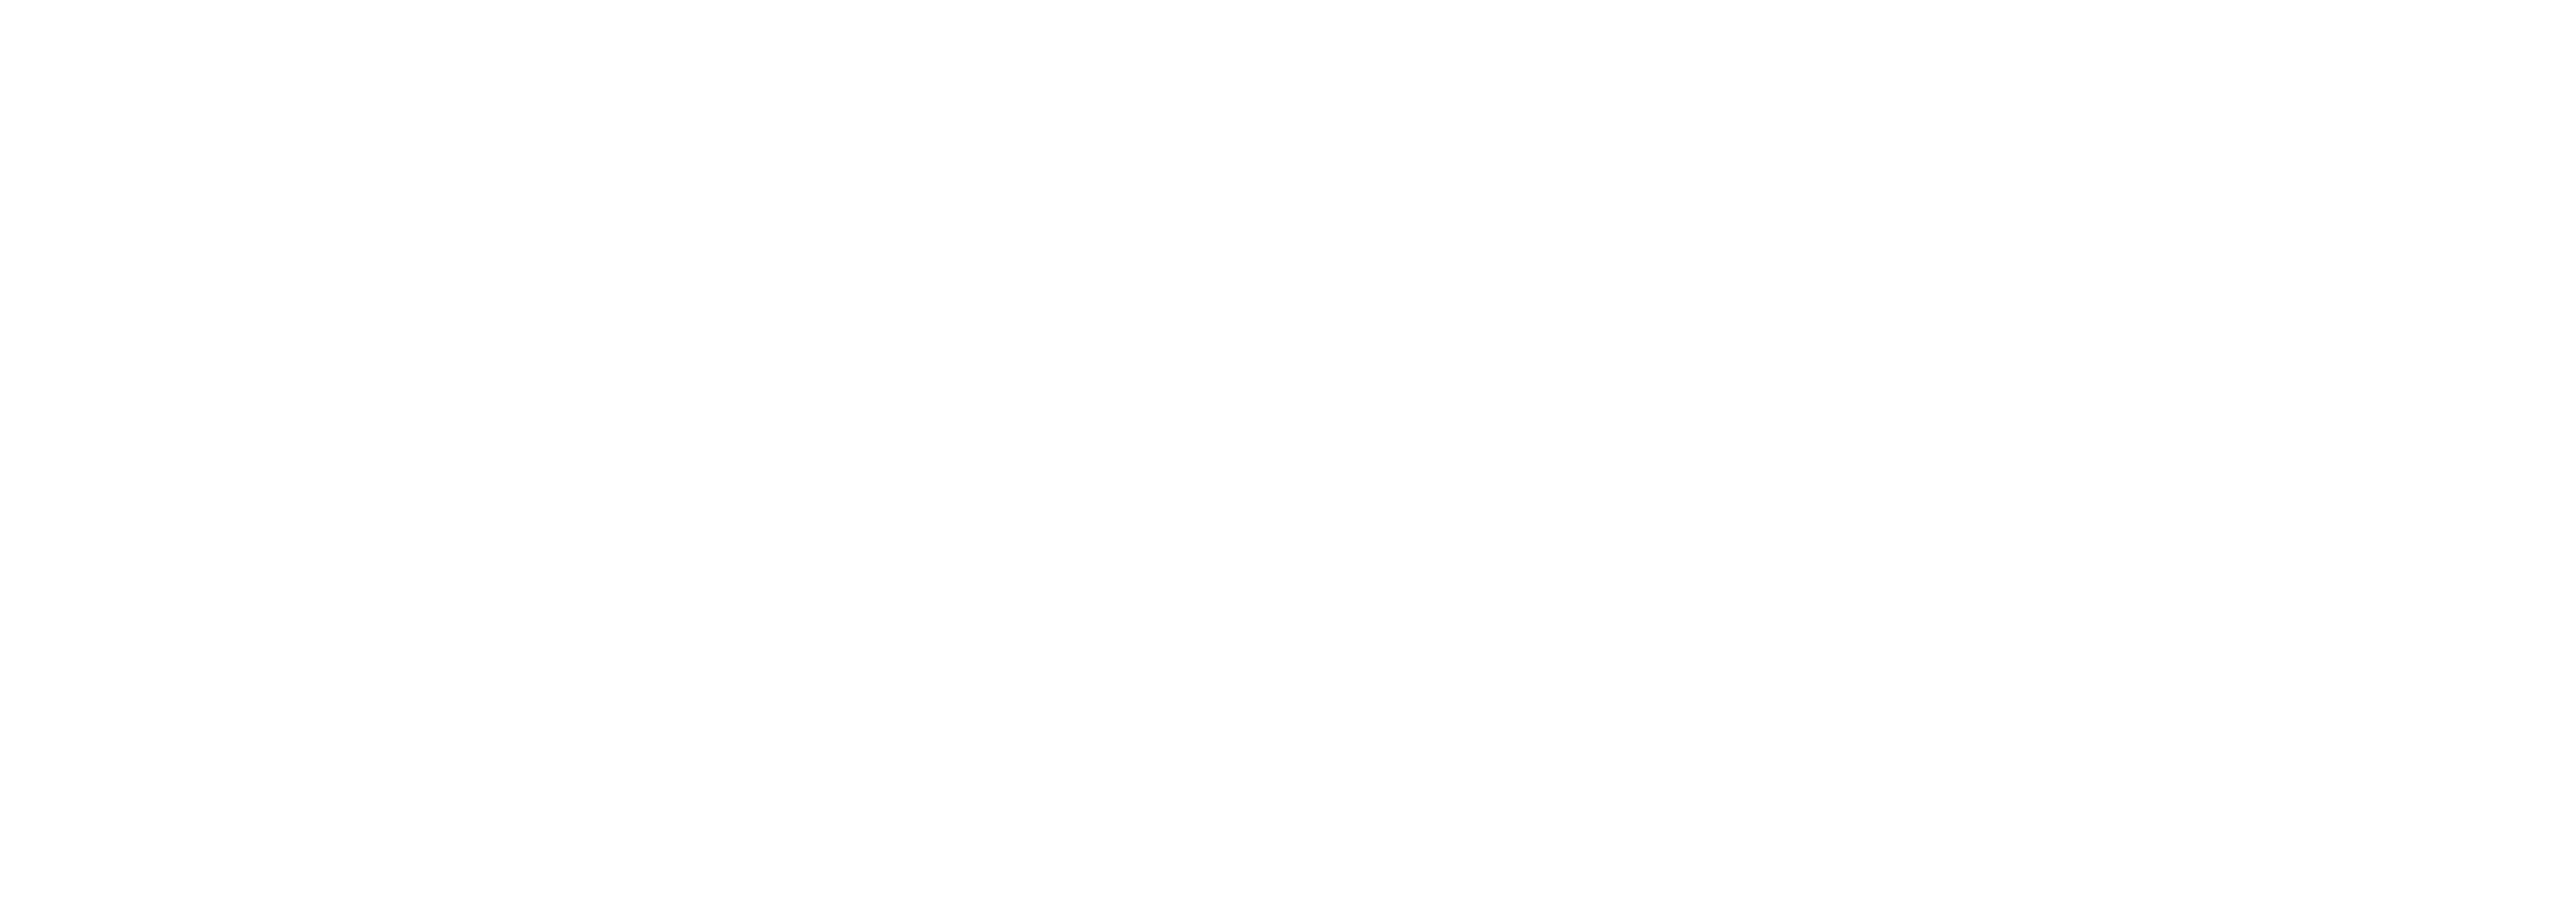 Jakel Marketing Light Logo